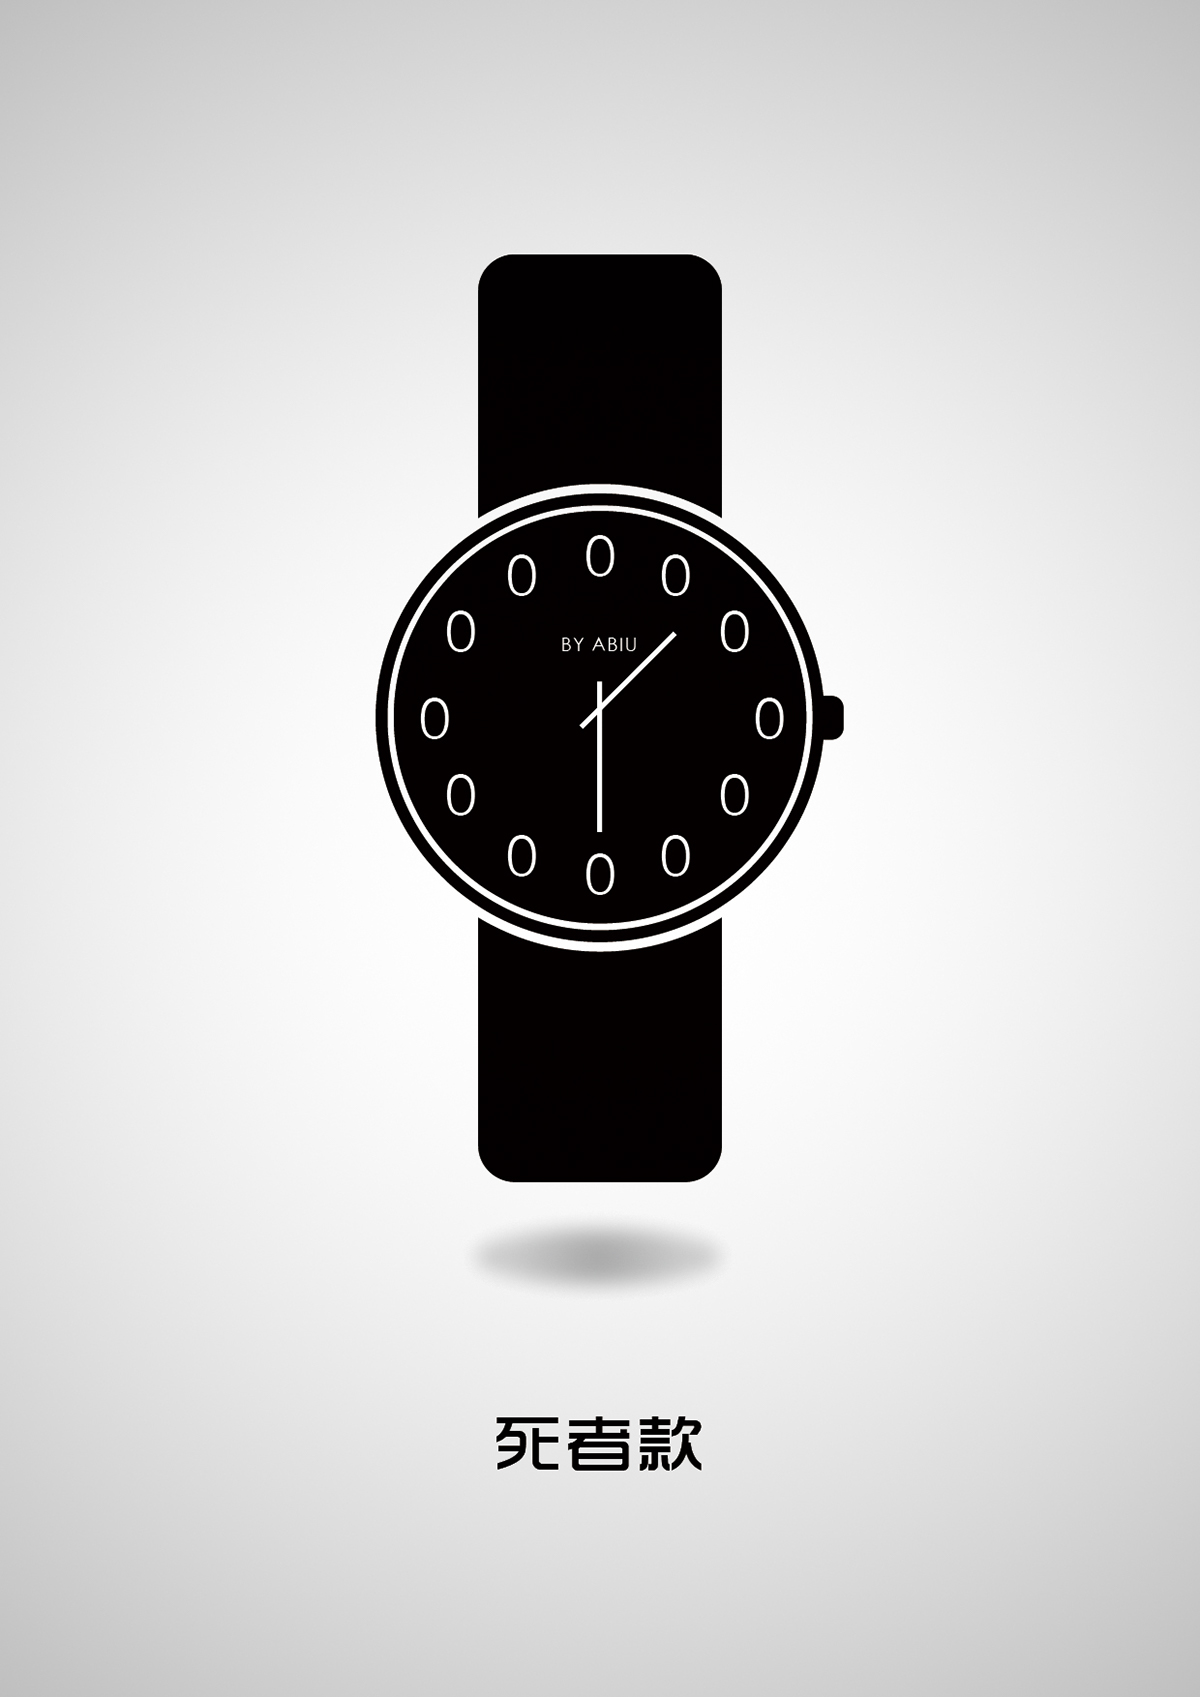 平面设计 创意设计 手表设计 趣味设计